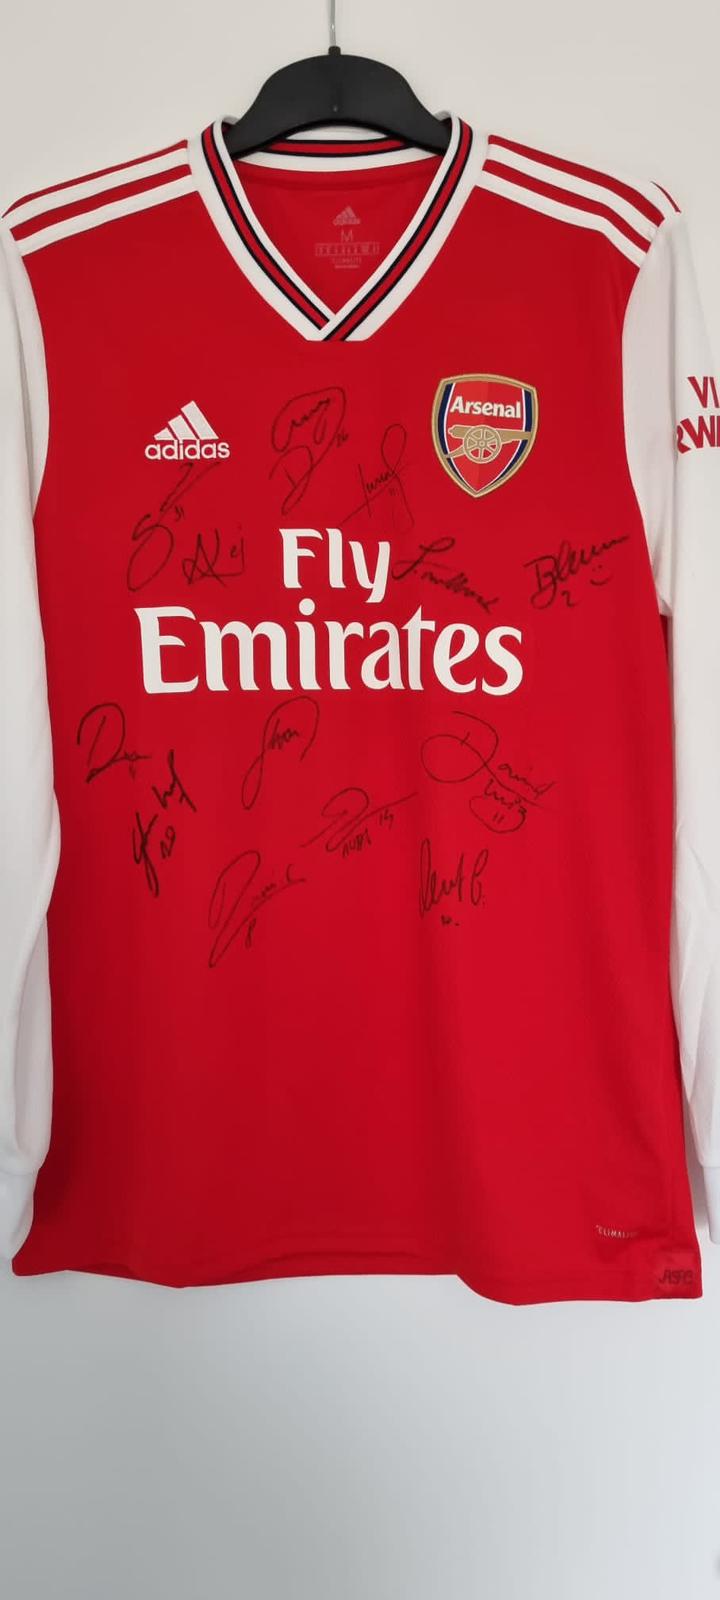 Una camiseta del Arsenal firmada por el primer equipo masculino que le regalaron a Cain deseándole una buena recuperación